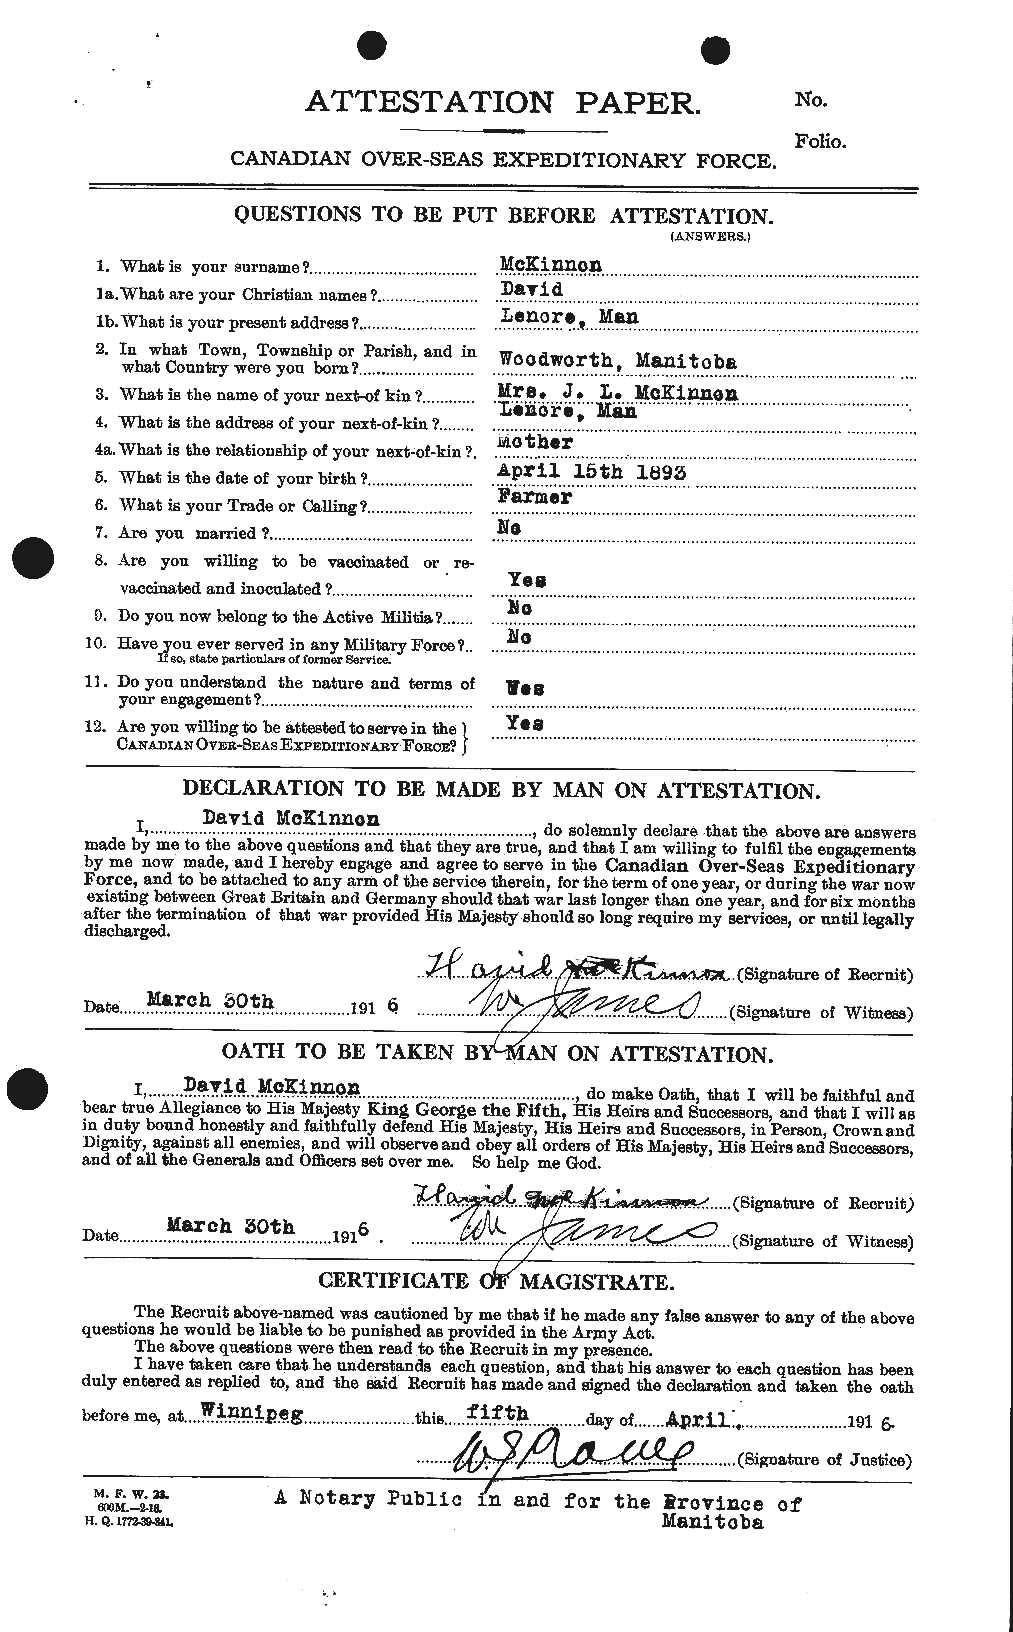 Dossiers du Personnel de la Première Guerre mondiale - CEC 531346a